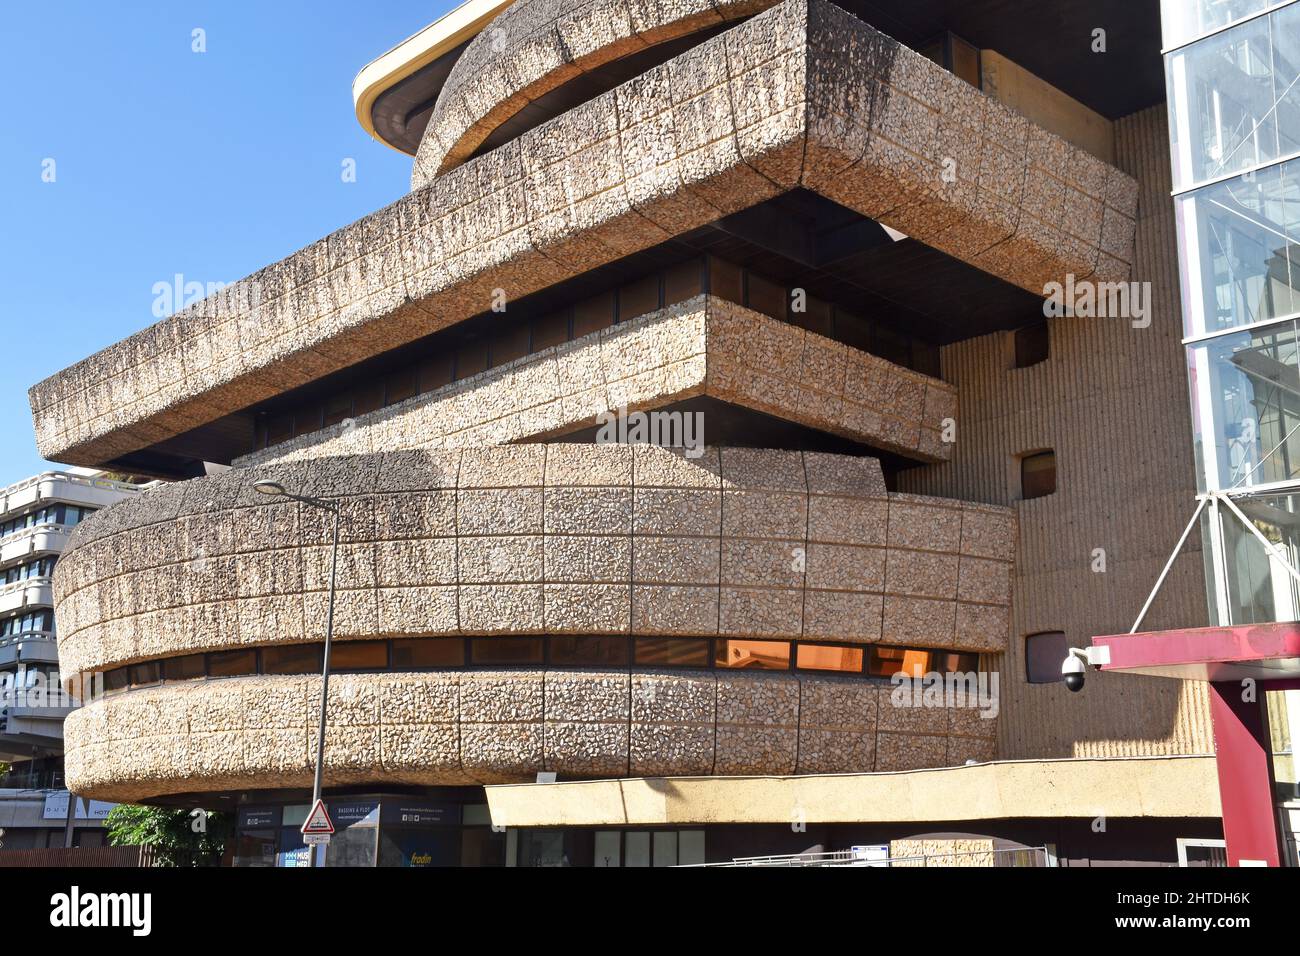 Arquitectura brutalista: La antigua sede central de un banco en el Centro Mériadeck de Burdeos se está reacondicionando en la actualidad a un centro cultural, tiendas y lofts Foto de stock